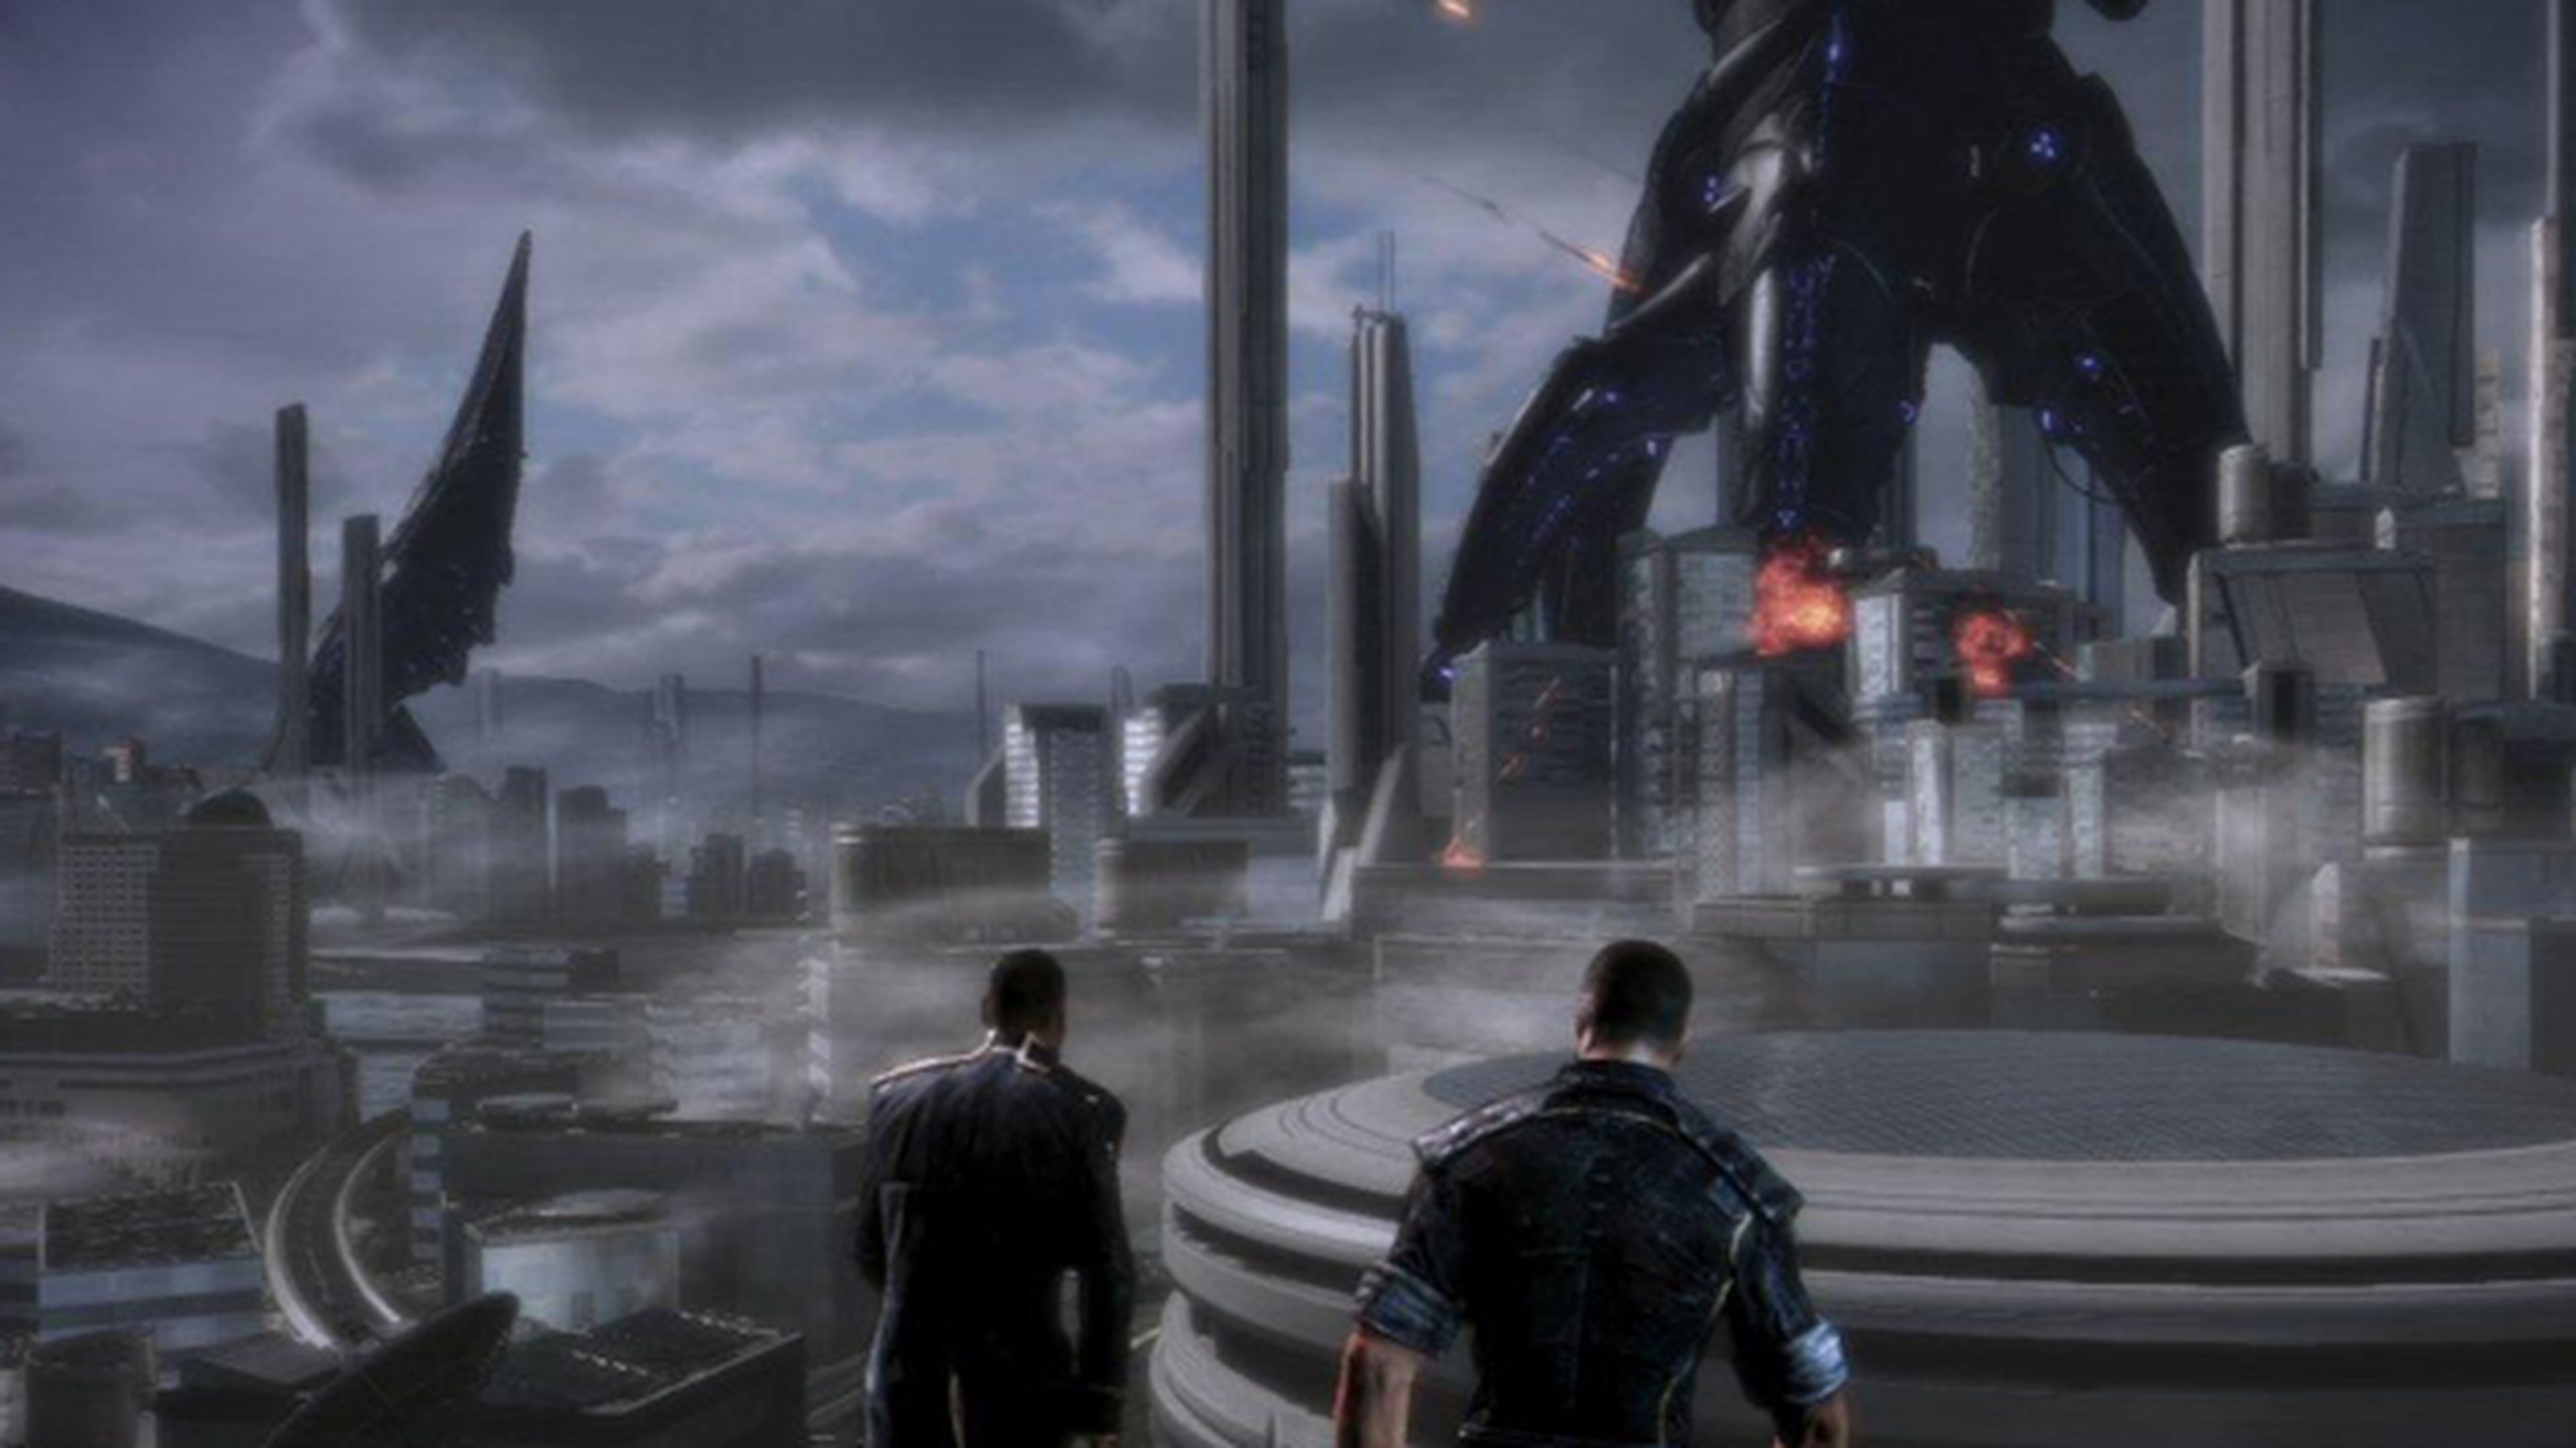 Guía Mass Effect 3